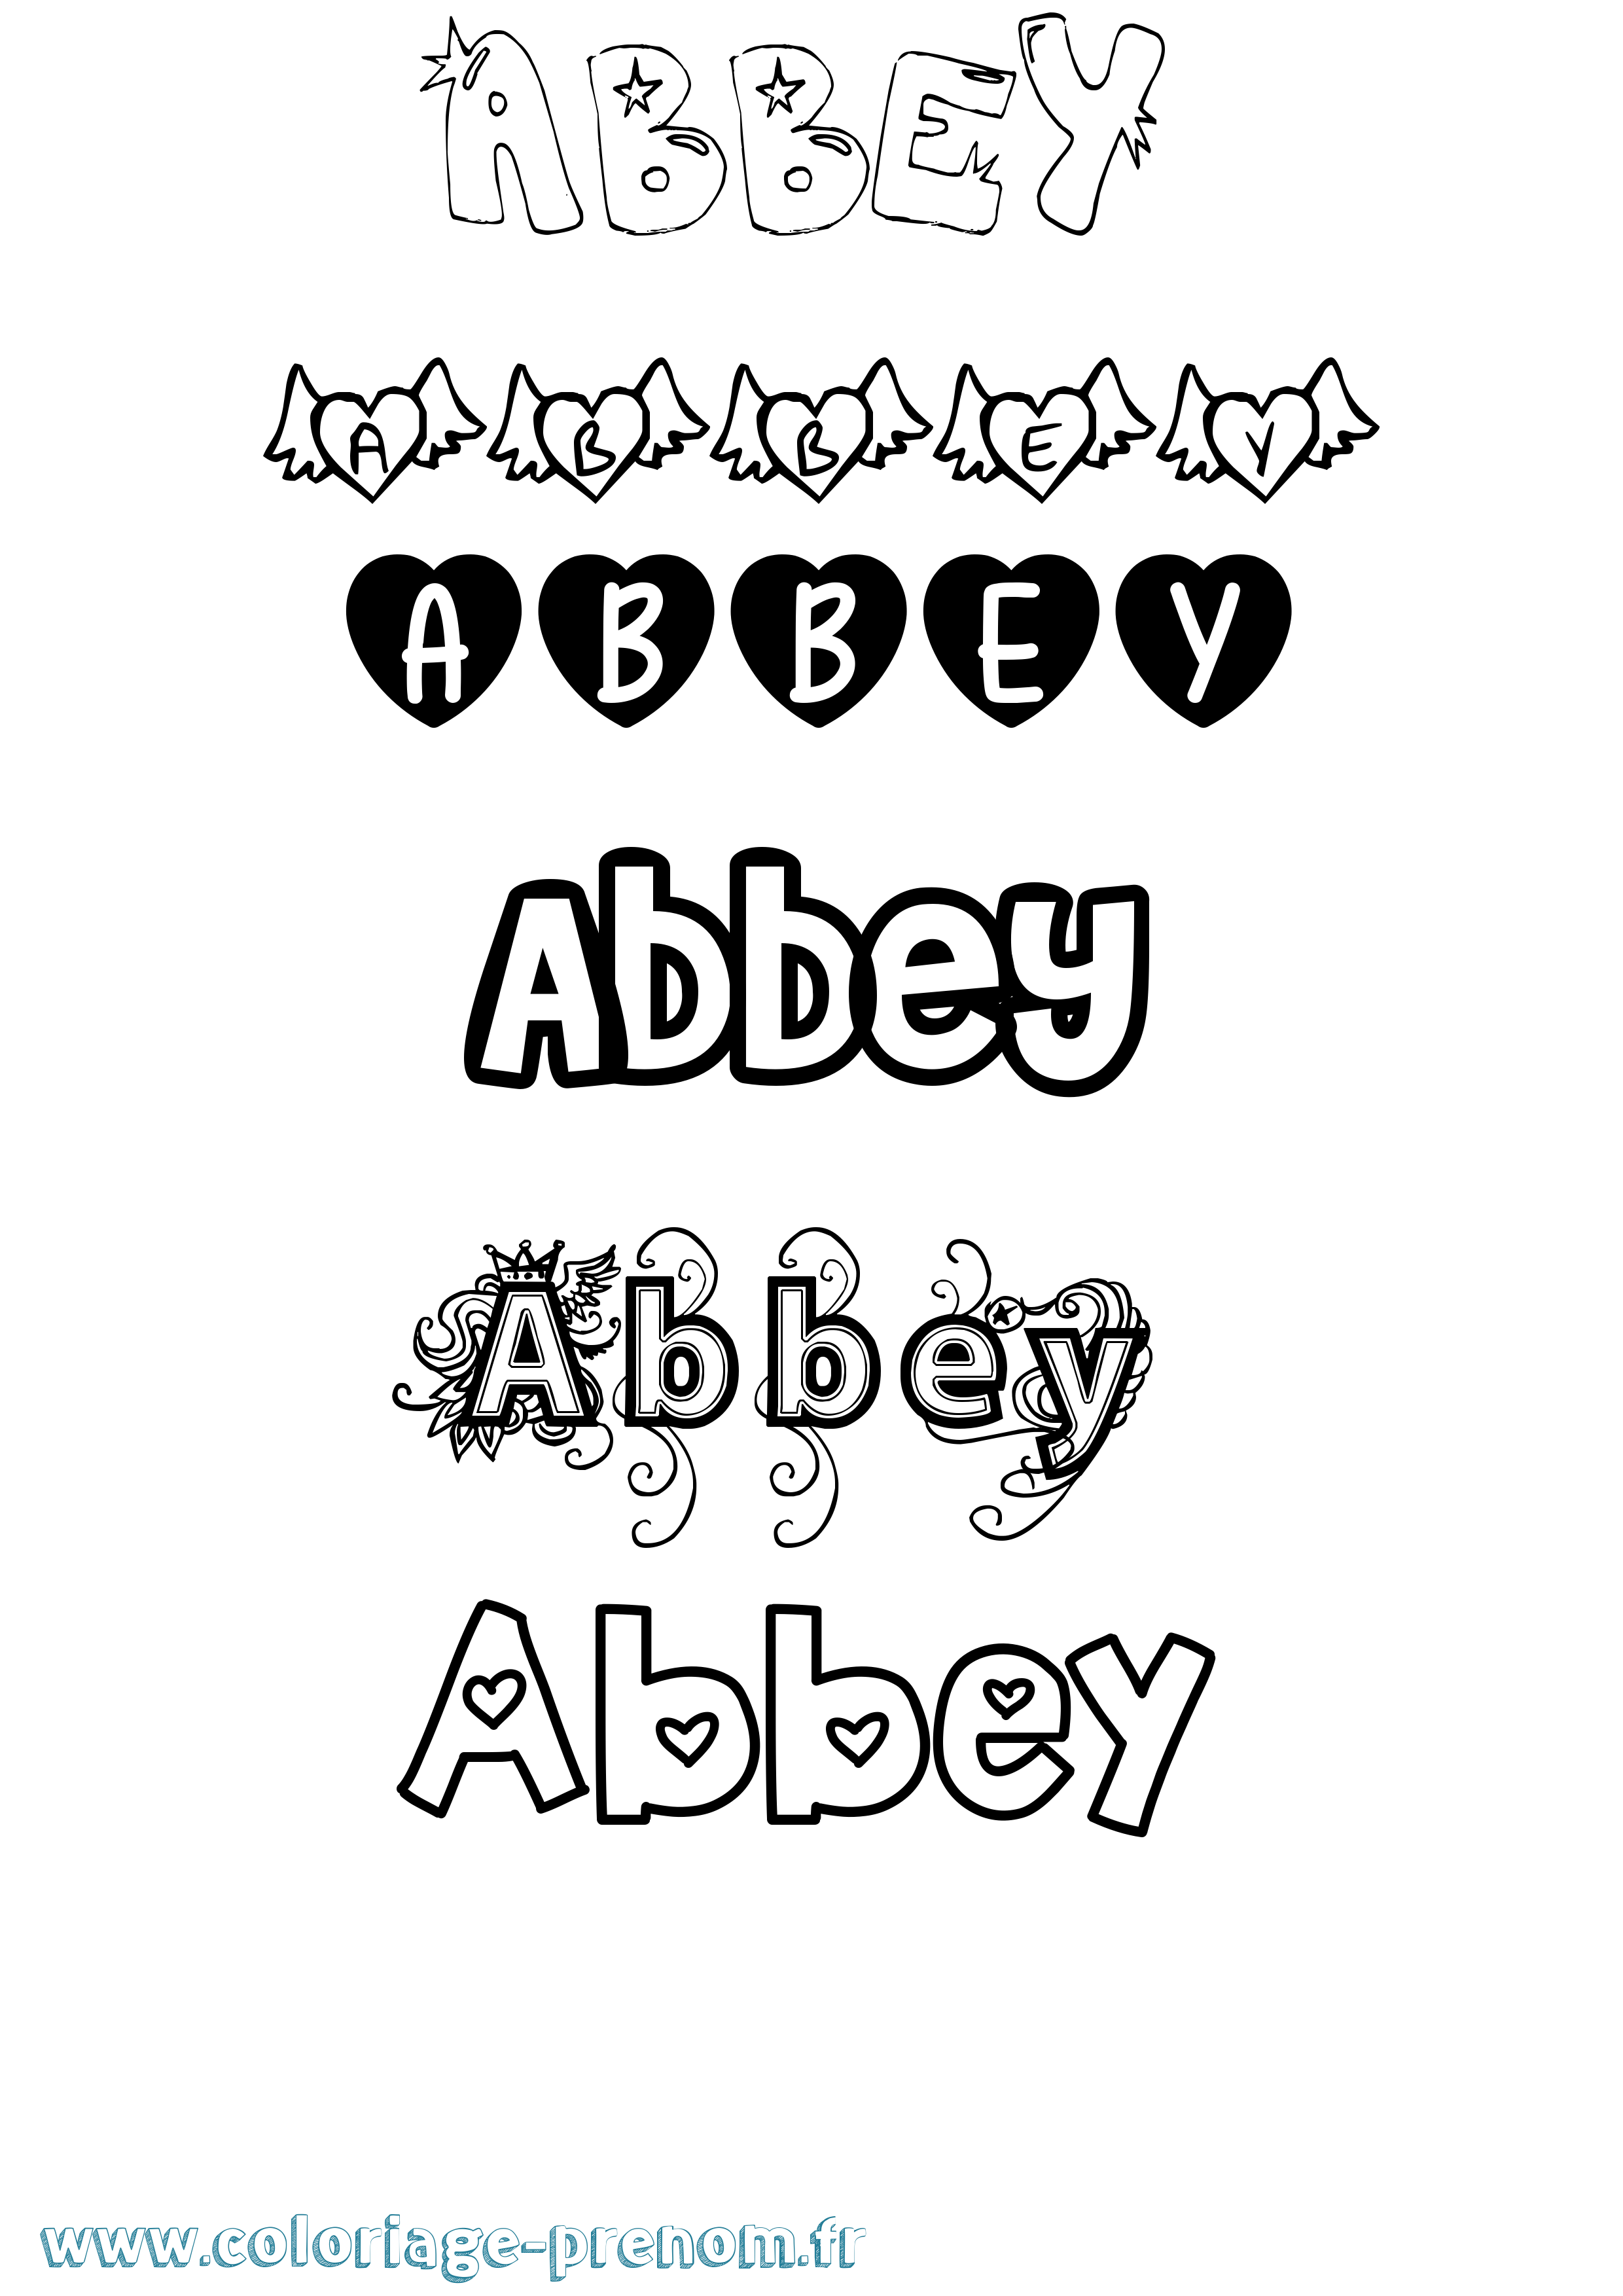 Coloriage prénom Abbey Girly